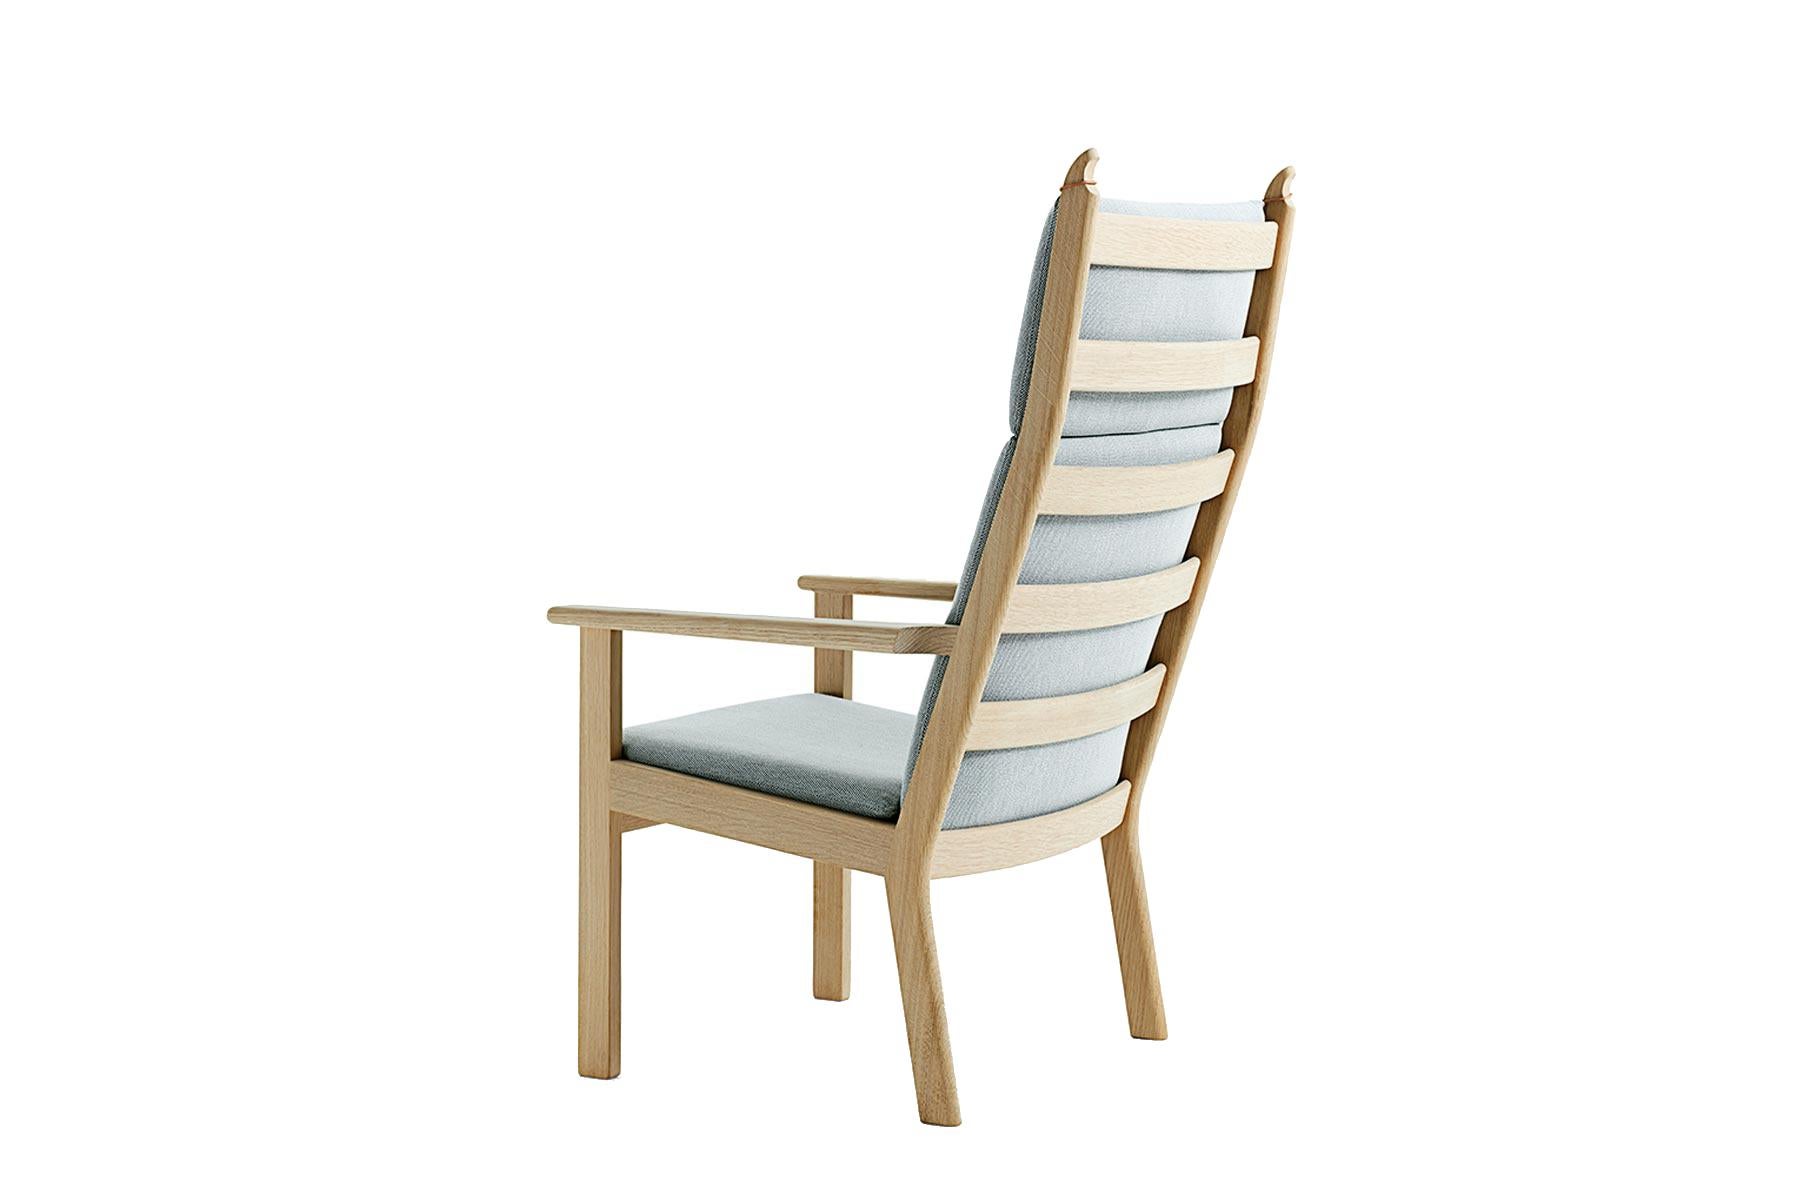 Conçue par Hans Wegner, la chaise longue à haut dossier 284A offre des lignes nettes et précises pour la maison moderne. La chaise est fabriquée à la main dans l'usine de GETAMA à Gedsted, au Danemark, par des ébénistes qualifiés qui utilisent des